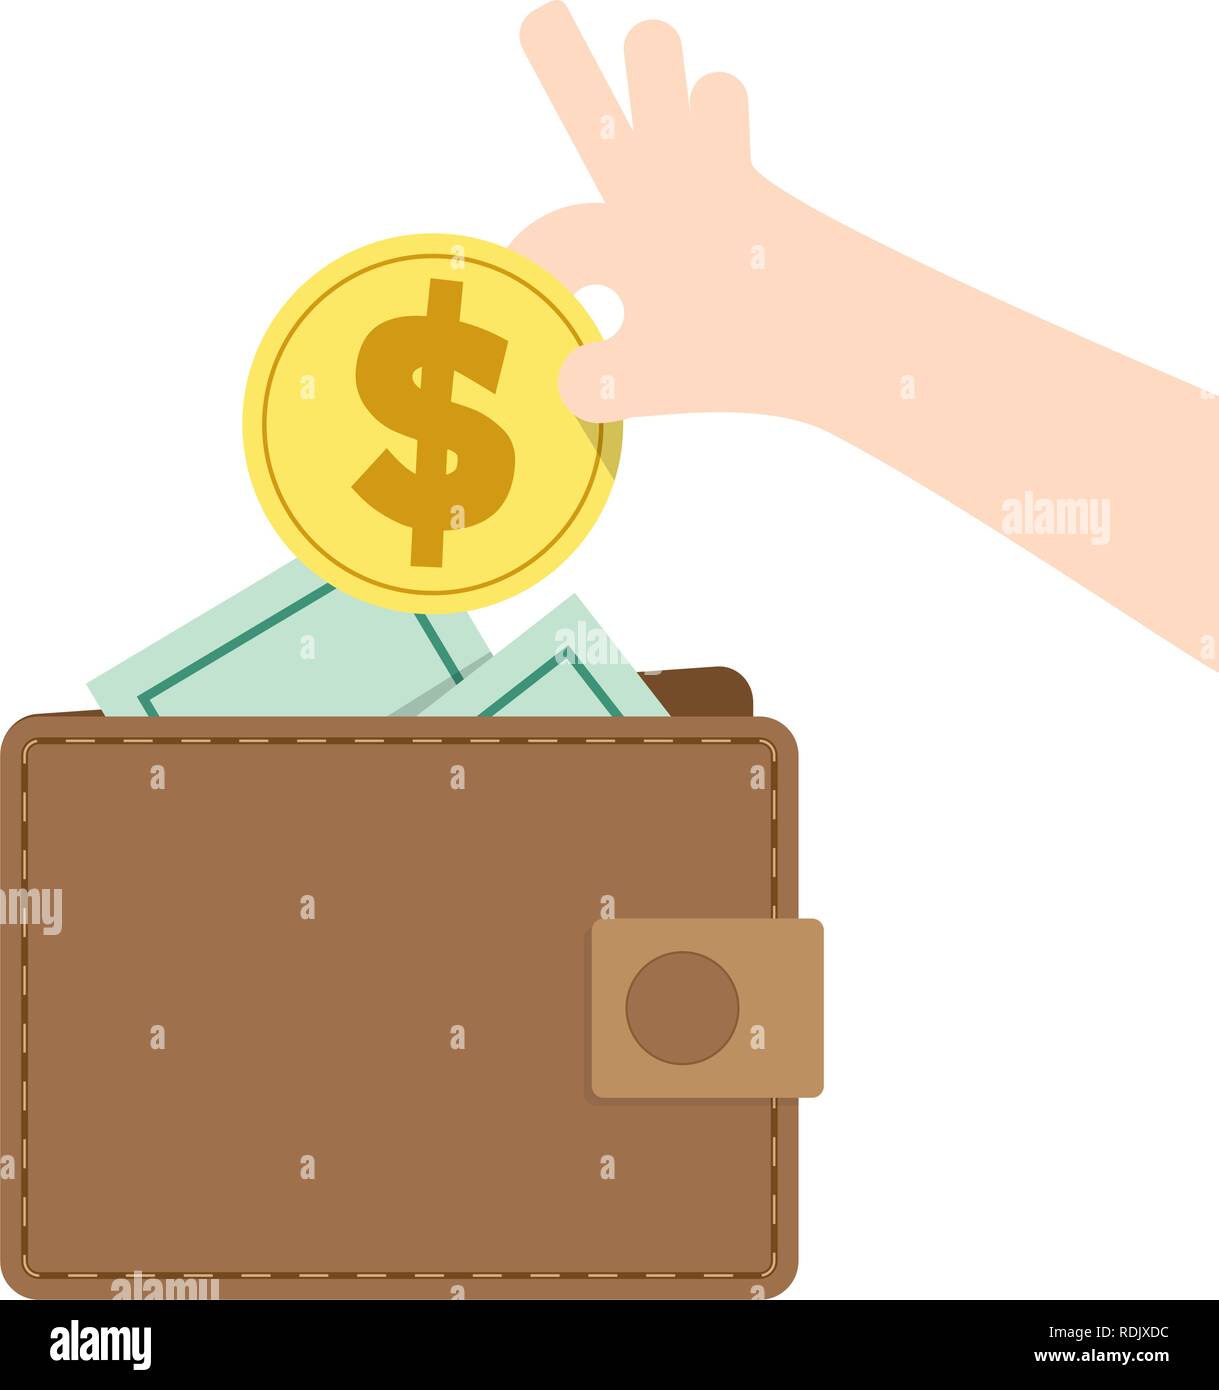 Illustrazione Vettore di risparmio di denaro e la spesa con il portafoglio. Concetto di finanza. Illustrazione Vettoriale